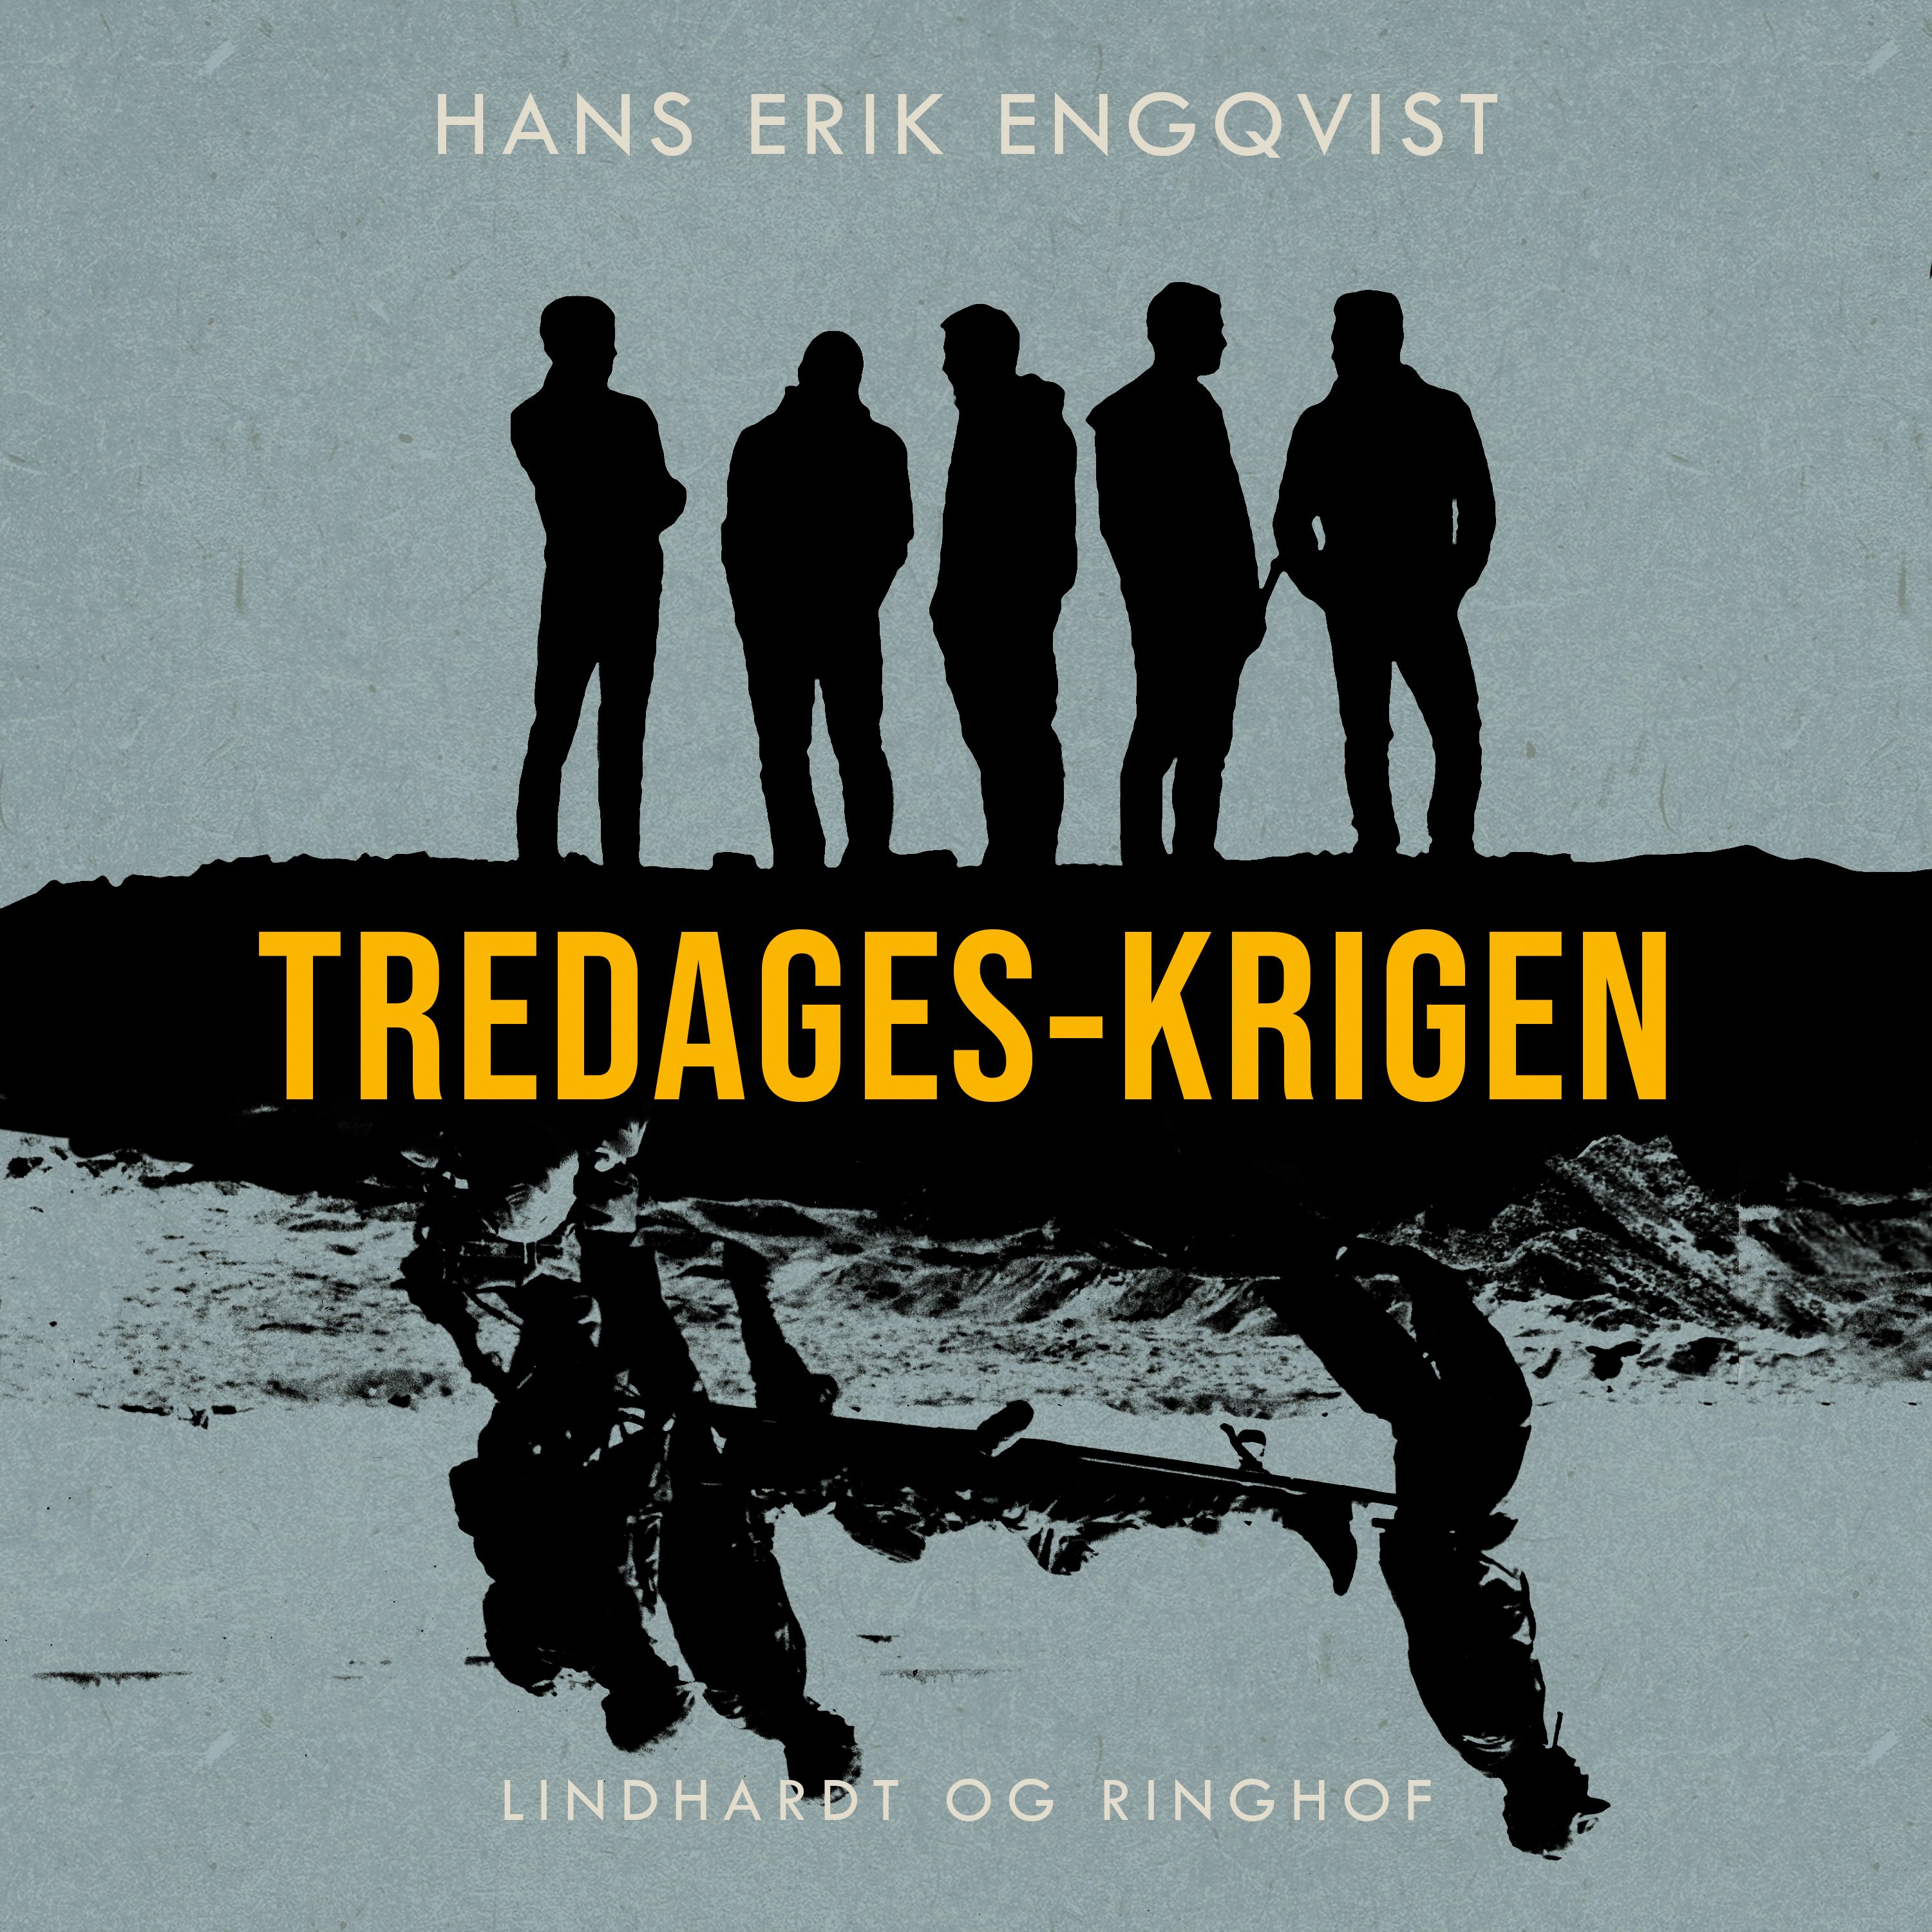 Tredages-krigen, ljudbok av Hans Erik Engqvist